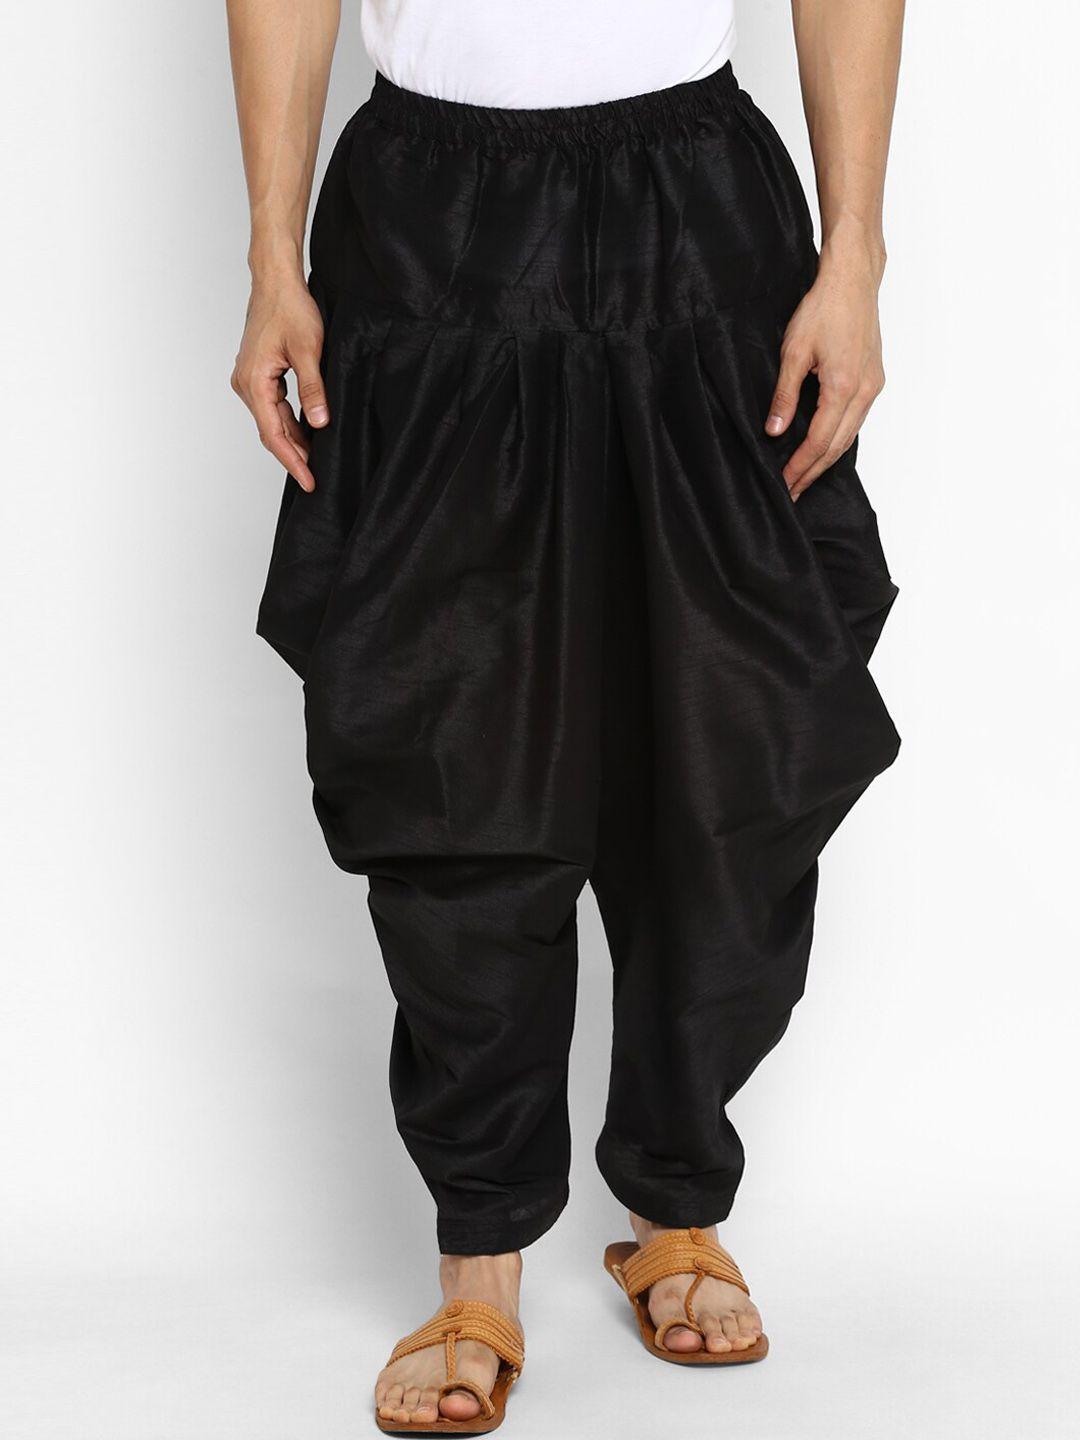 royal-kurta-men-black-solid-loose-fit-pyjama